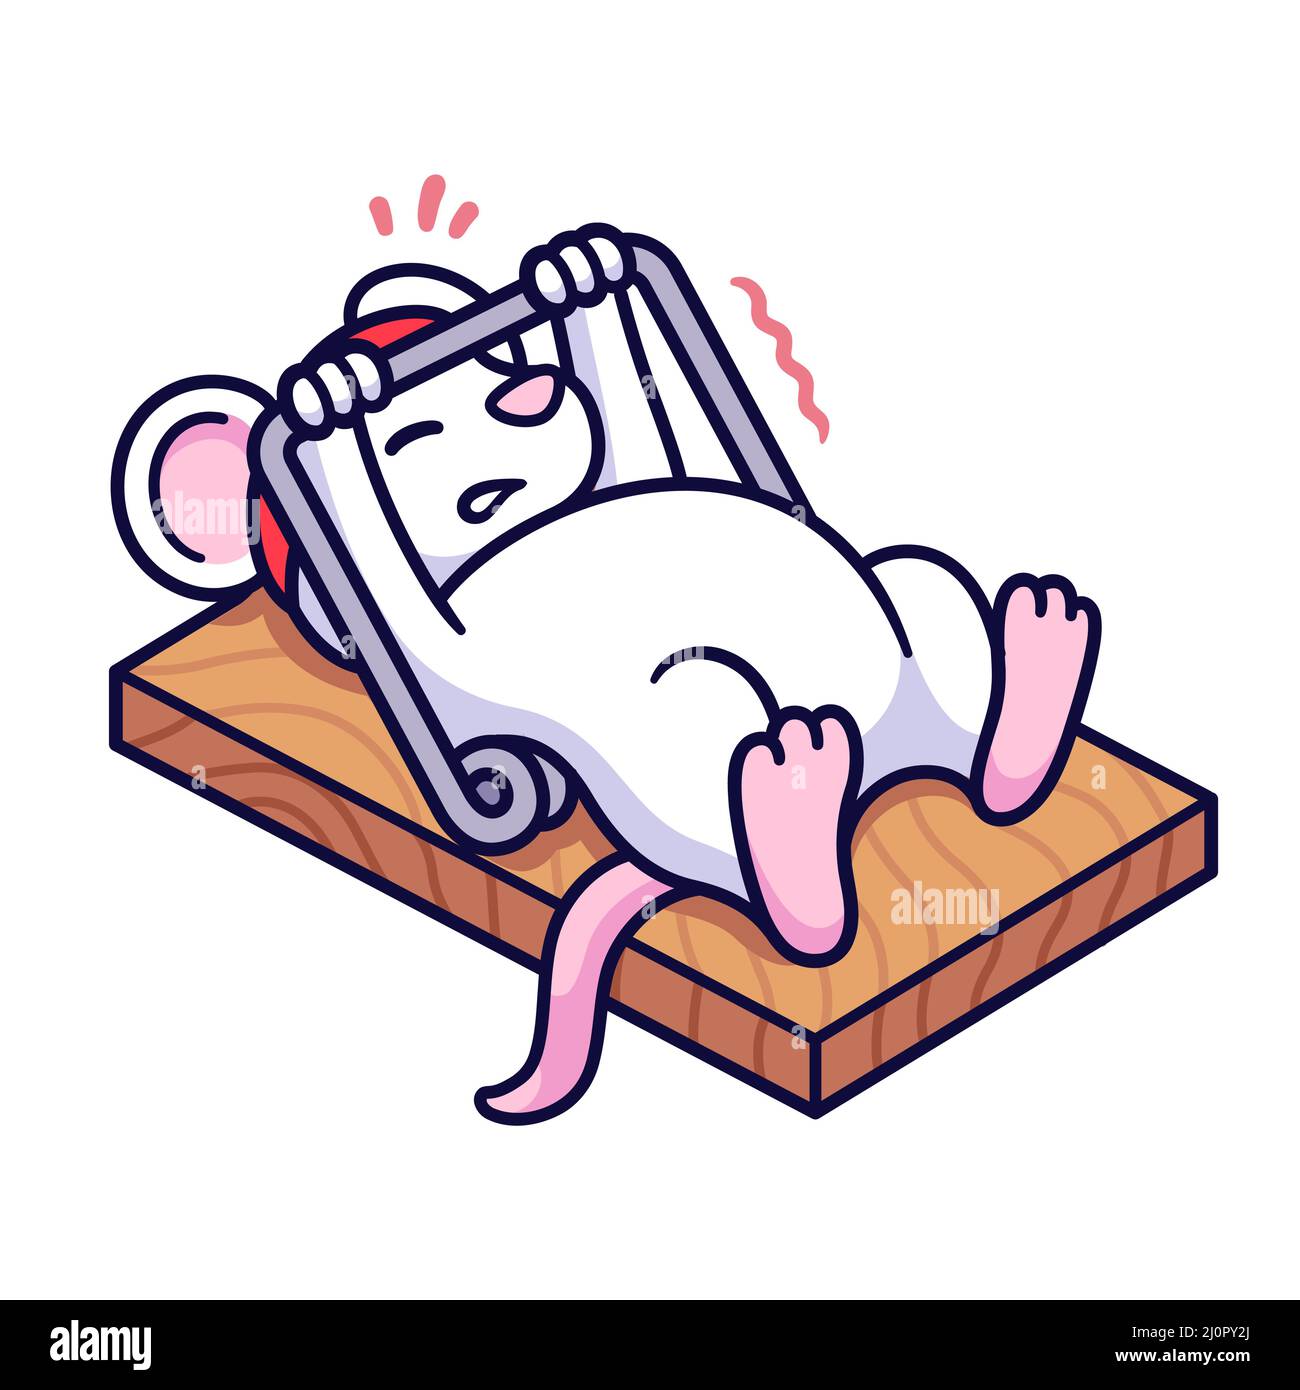 Gym rat entraînement, mignon dessin animé souris banc appuyant mousetrap.Dessin amusant de forme physique et d'exercice, illustration d'art de clip vectoriel. Illustration de Vecteur